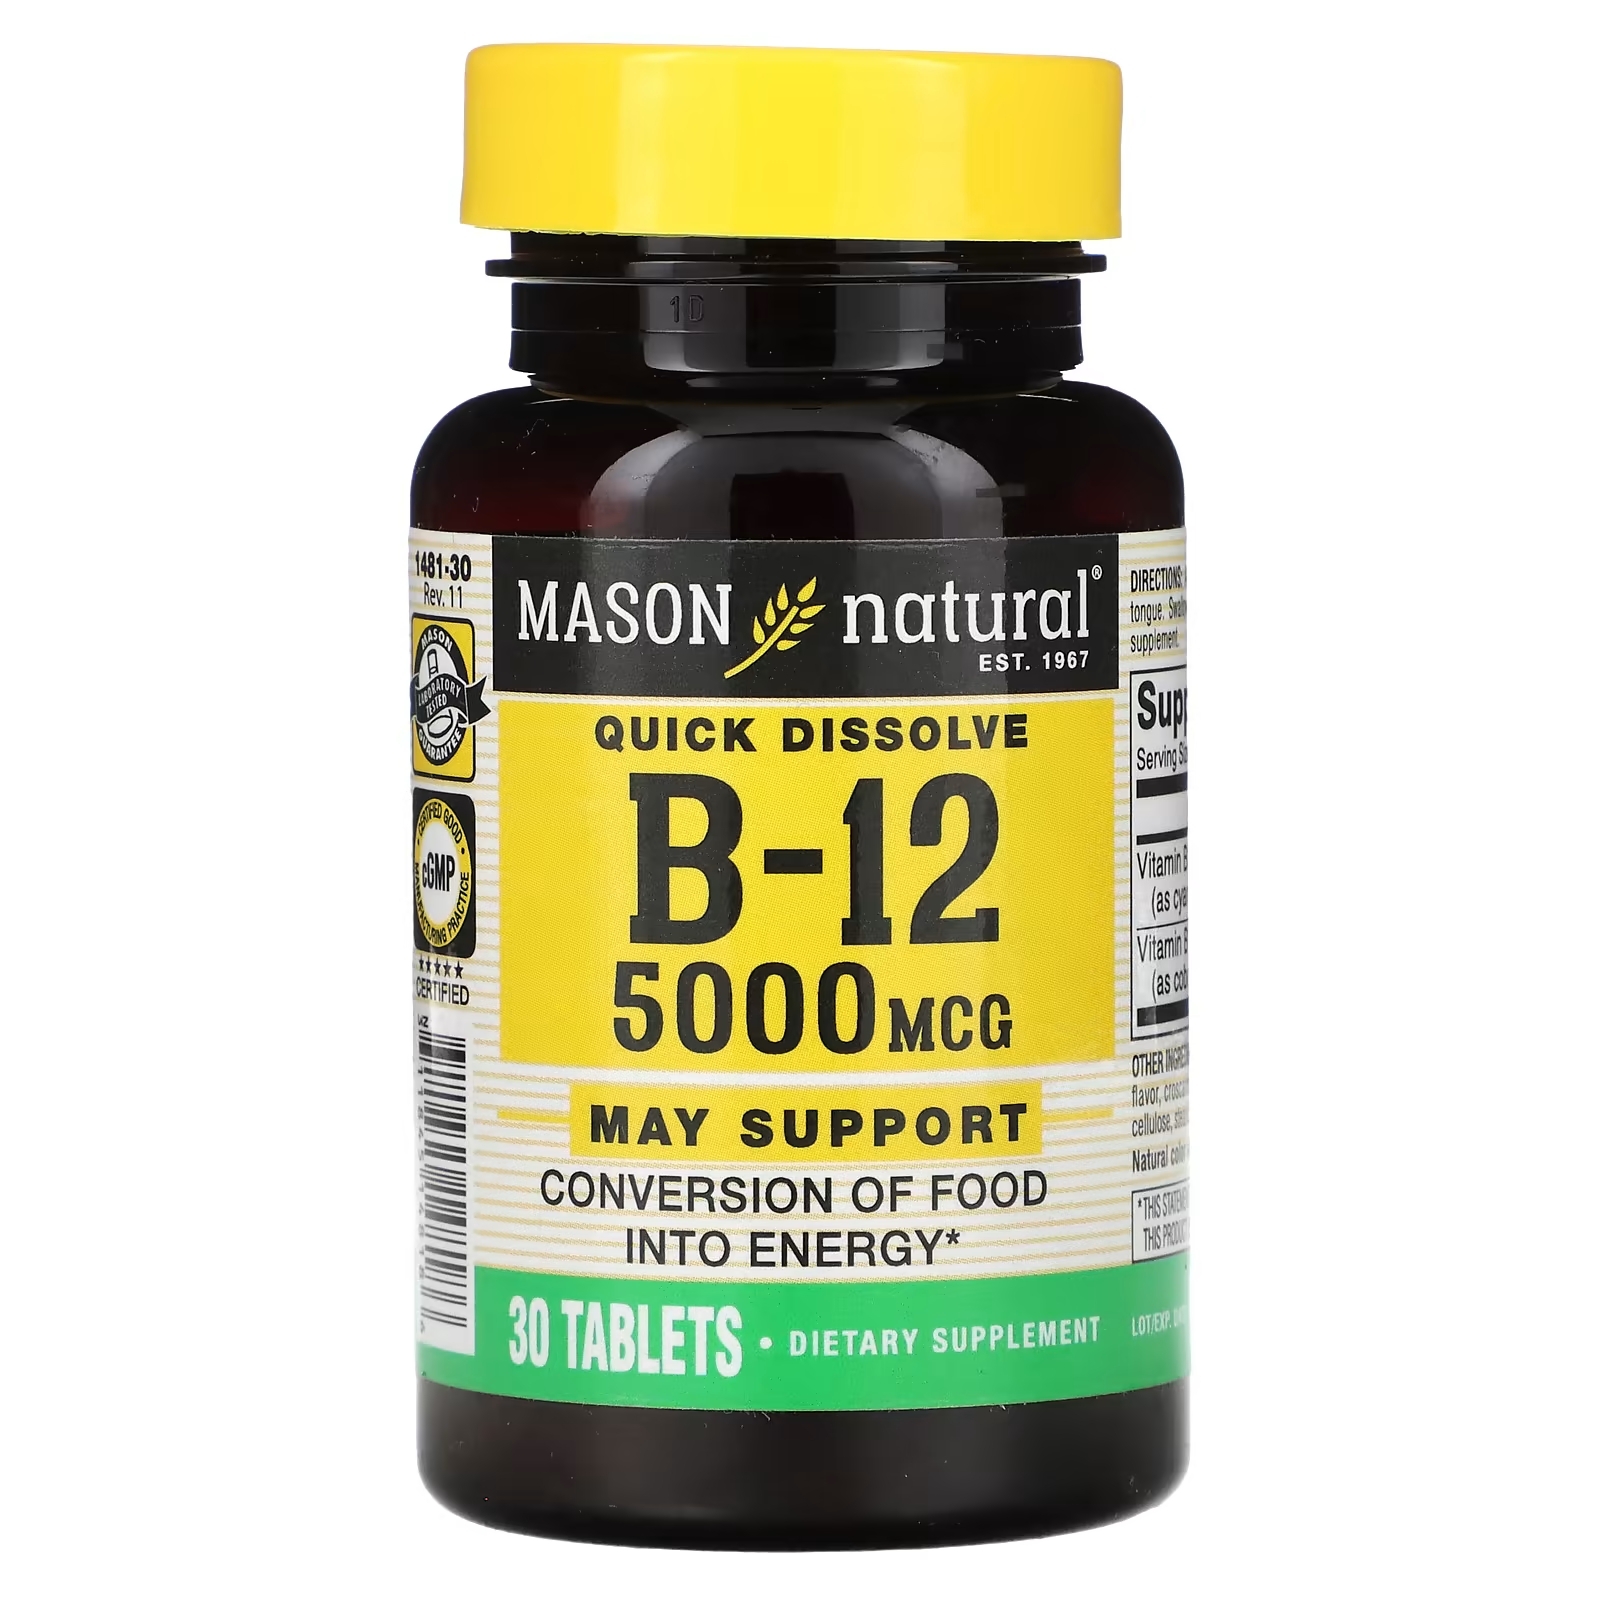 Mason Natural Быстрорастворимый витамин B-12 5000 мкг 30 таблеток быстрорастворимый витамин b 12 mason natural 200 таблеток